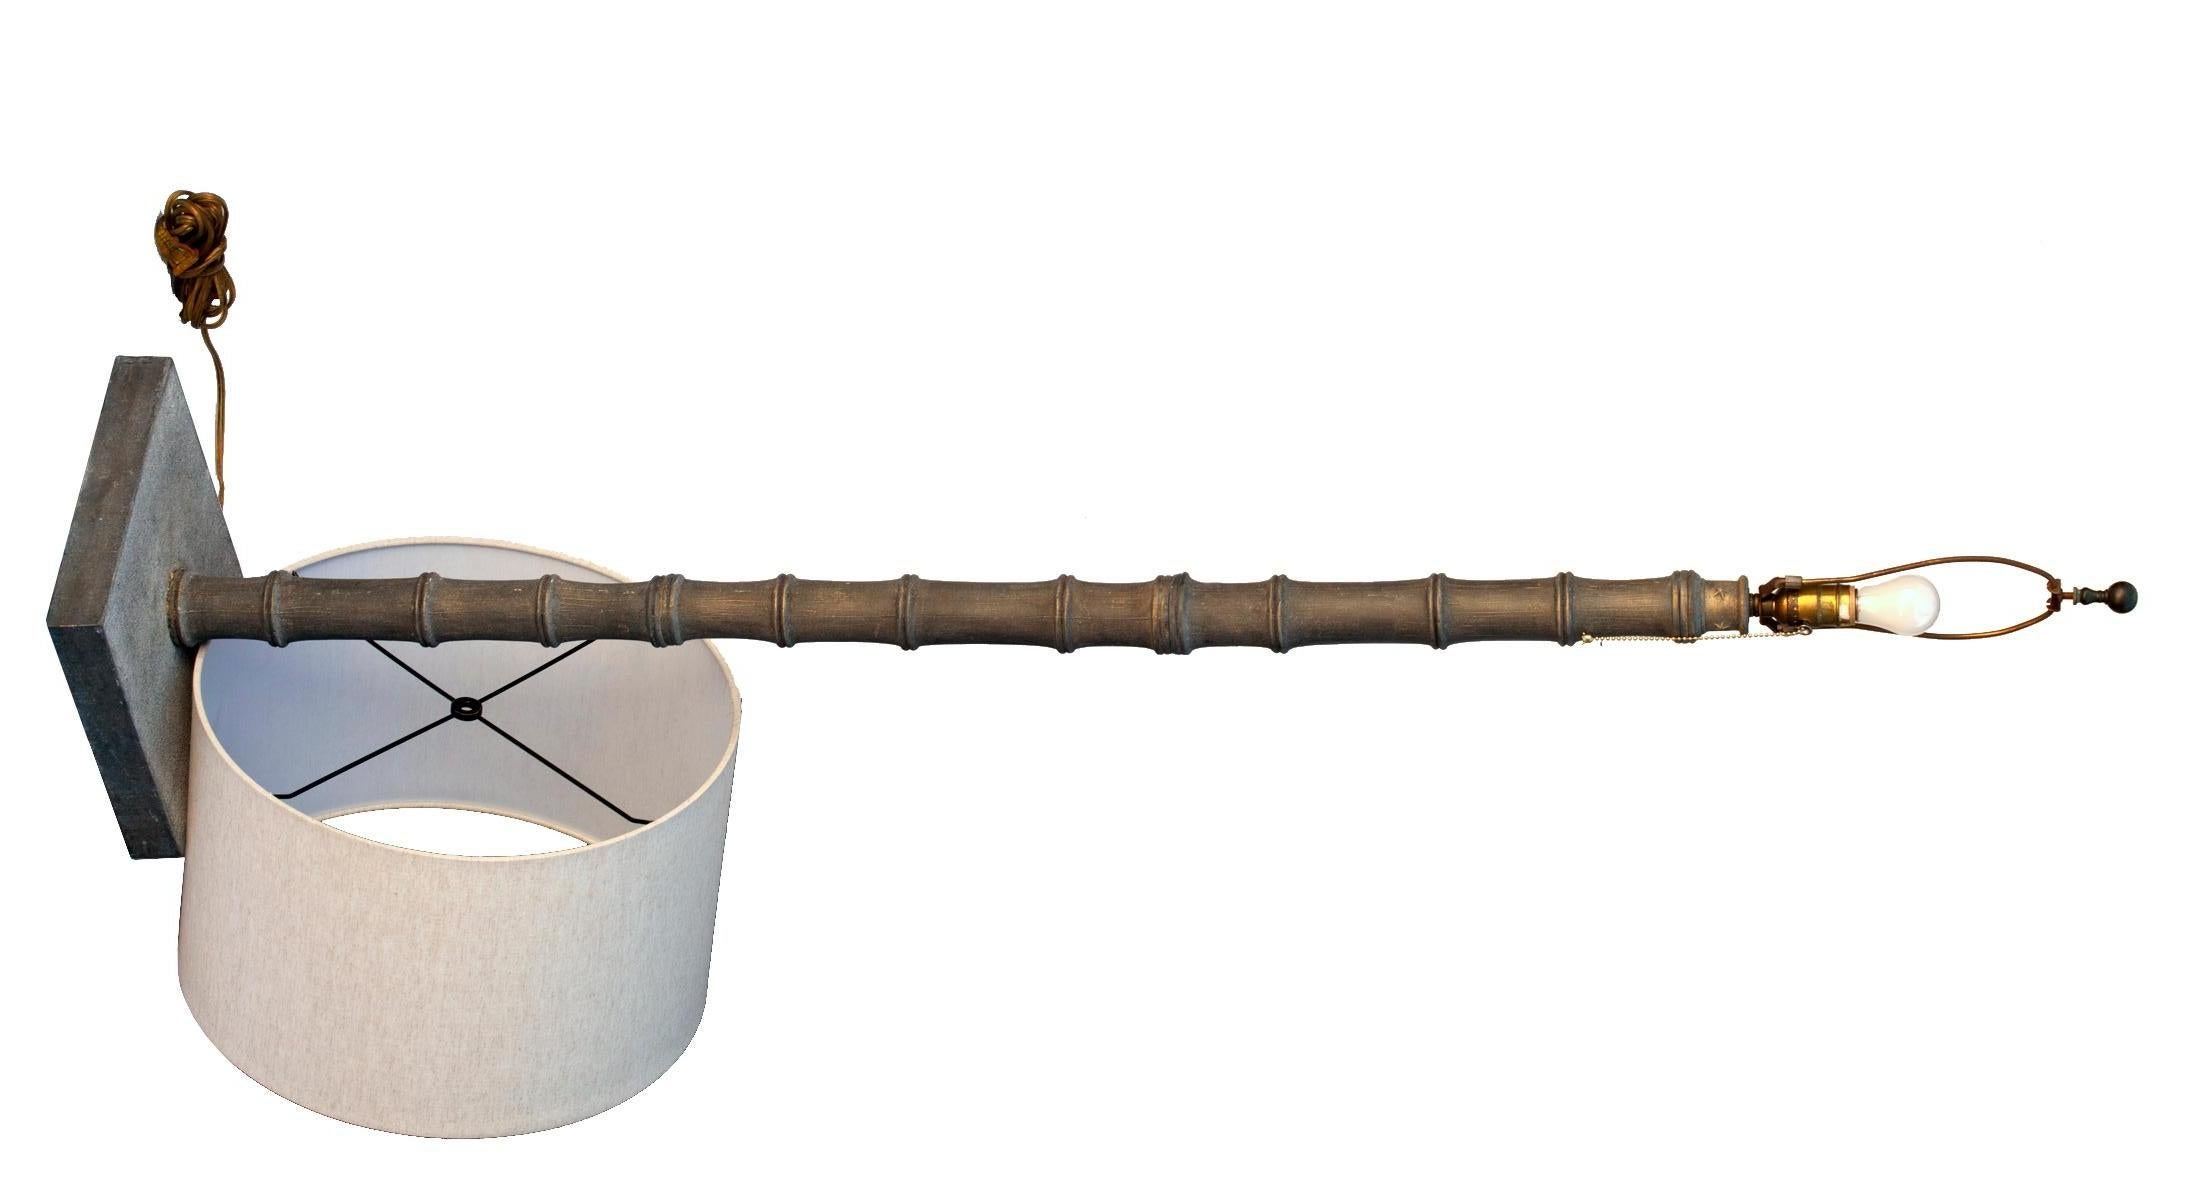 Gestapelte Metallteile aus patinierter Bronze folgen der Form des Bambus. Der Farbton, neues Leinenfass.
Der Sockel ist mit einer Reihe von fünfzackigen Sternen verziert, die die oberste Bank des 